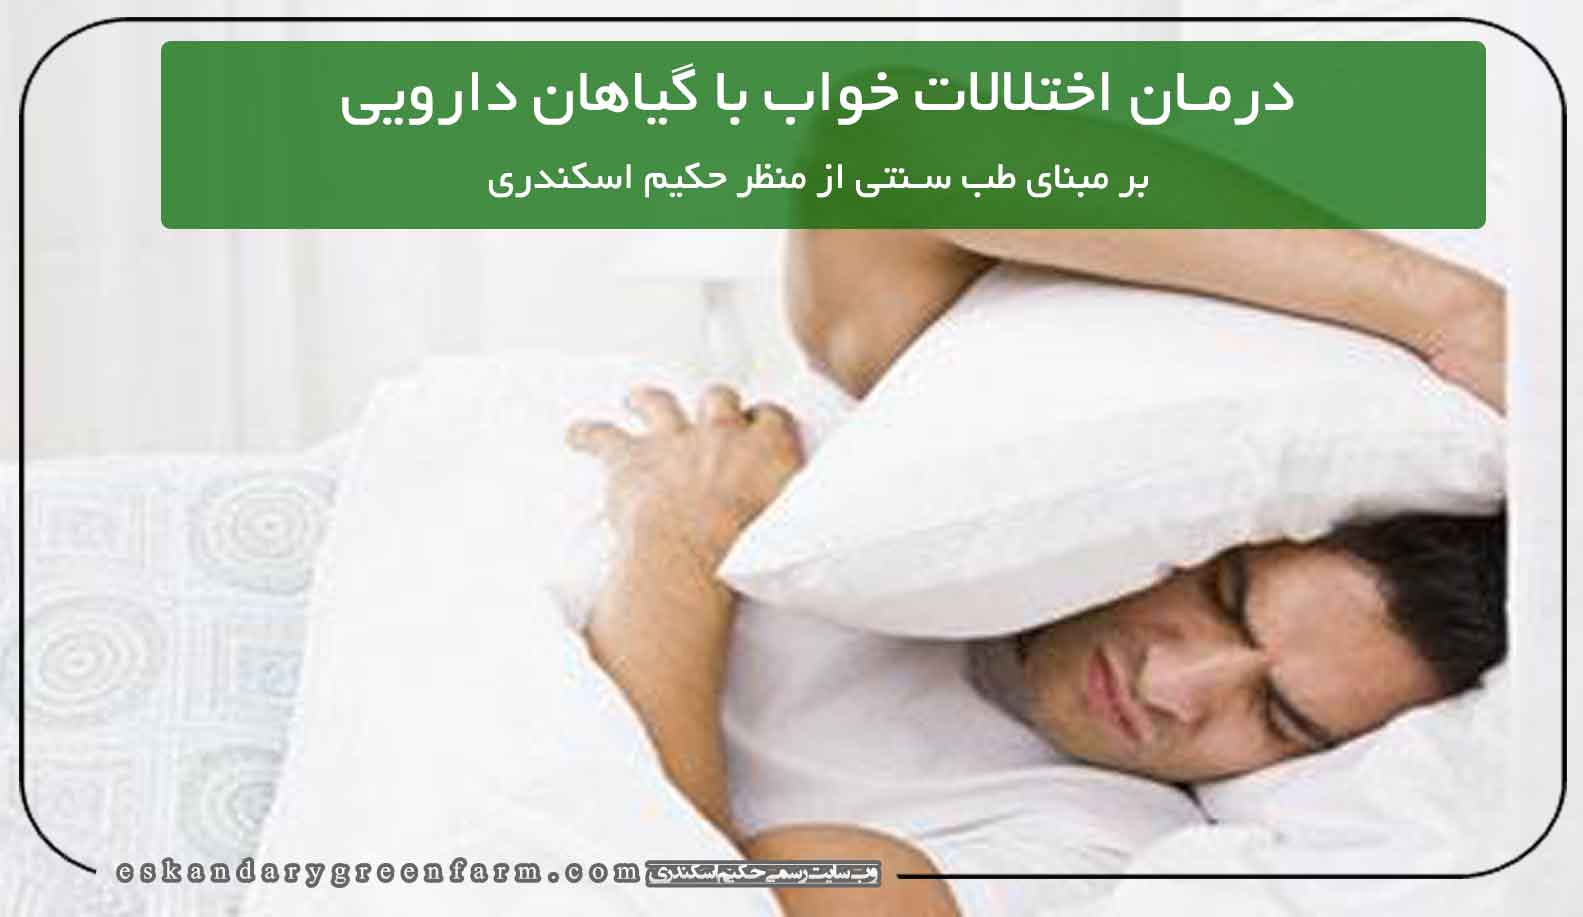 مواد طبیعی و گیاهان دارویی در درمان اختلالات خواب بسیار مفید است